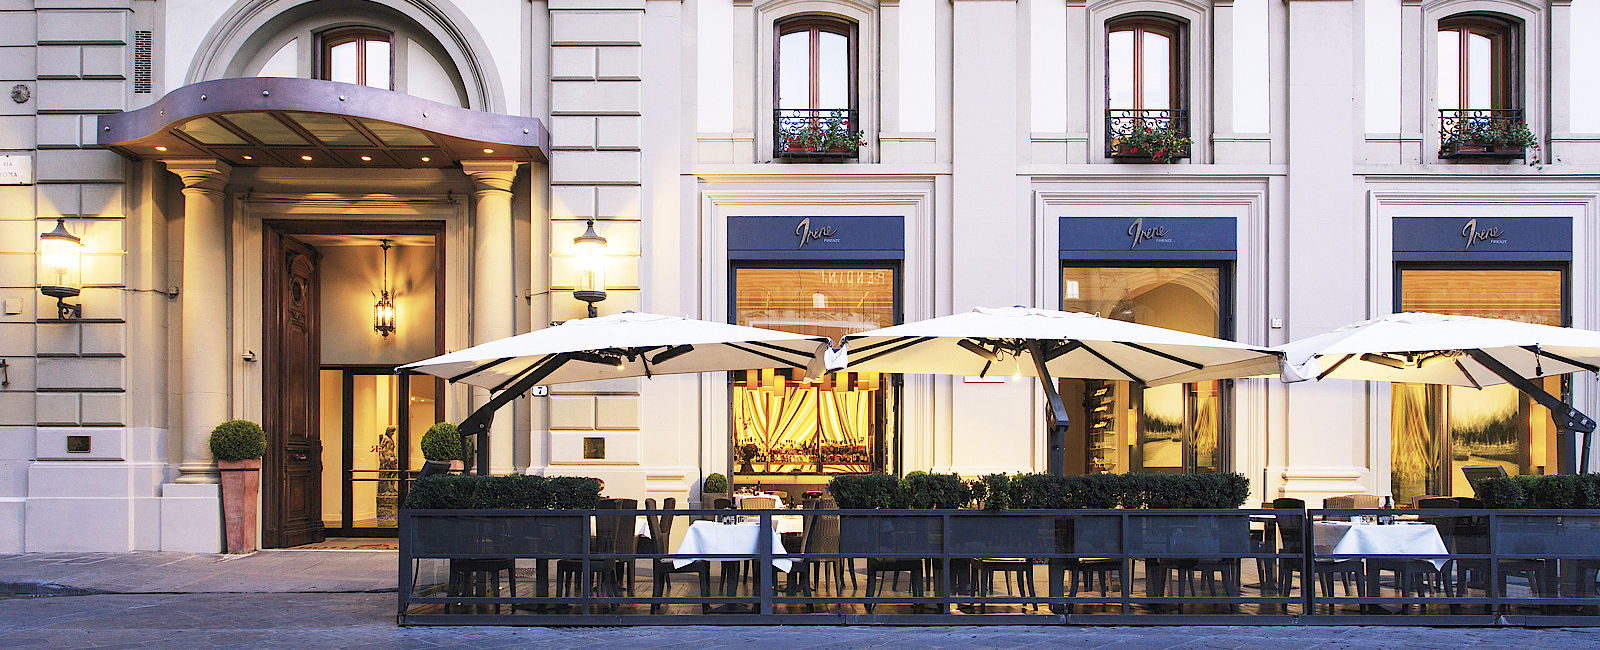 VERY SPECIAL HOTEL
 Hotel Savoy 
 Florentinisches Juwel 